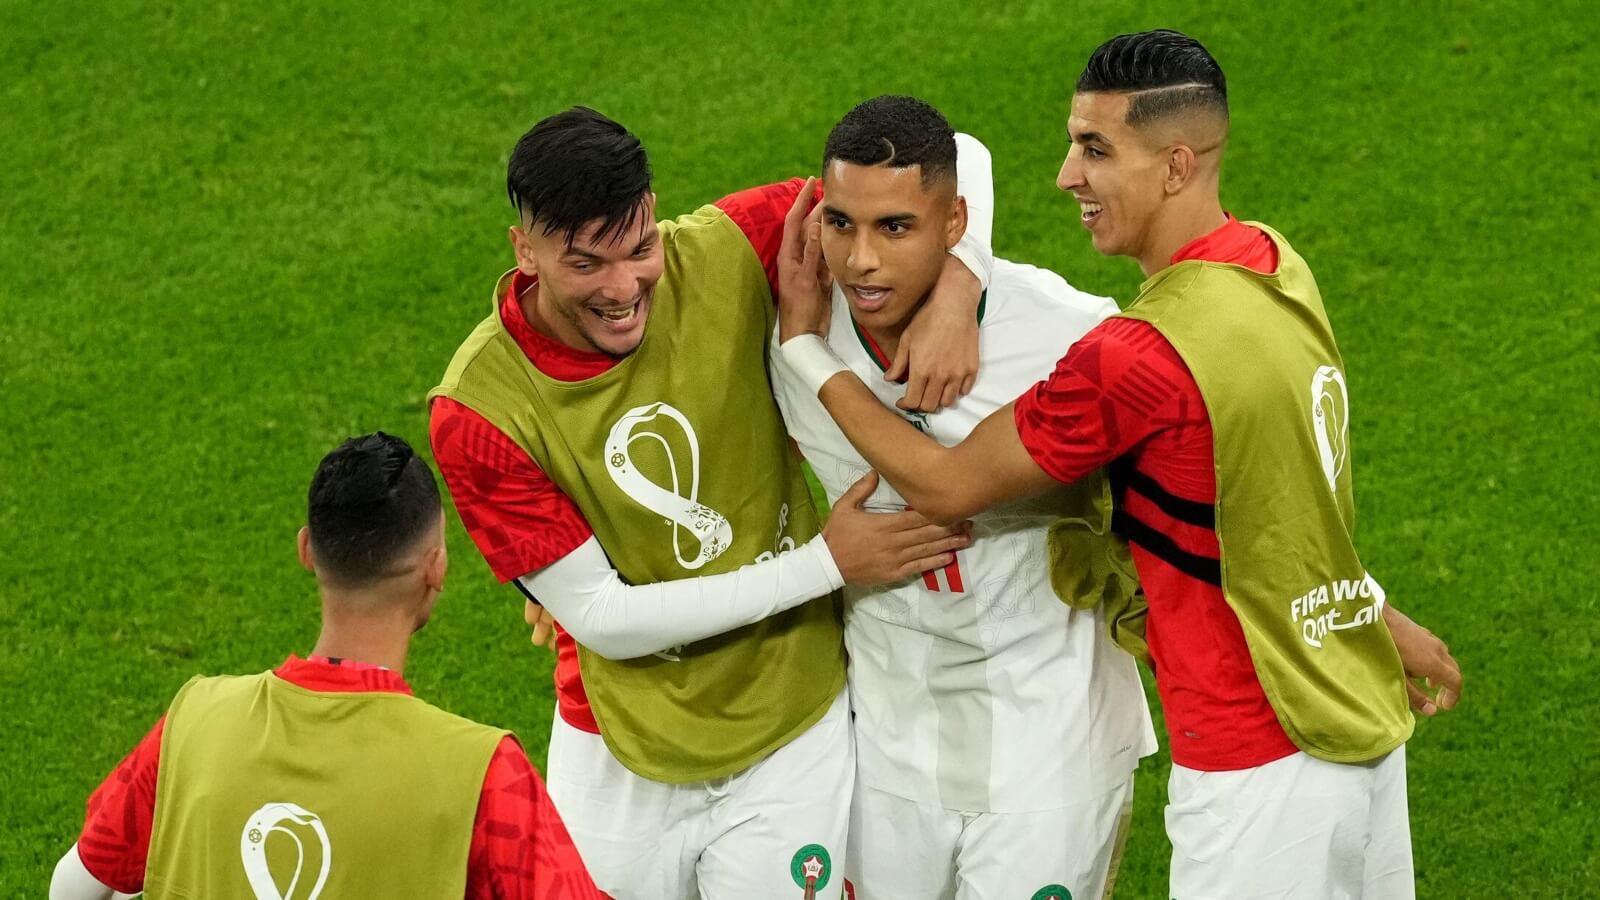 Βέλγιο - Μαρόκο 0-2: Σε μπελάδες οι "κόκκινοι διάβολοι"